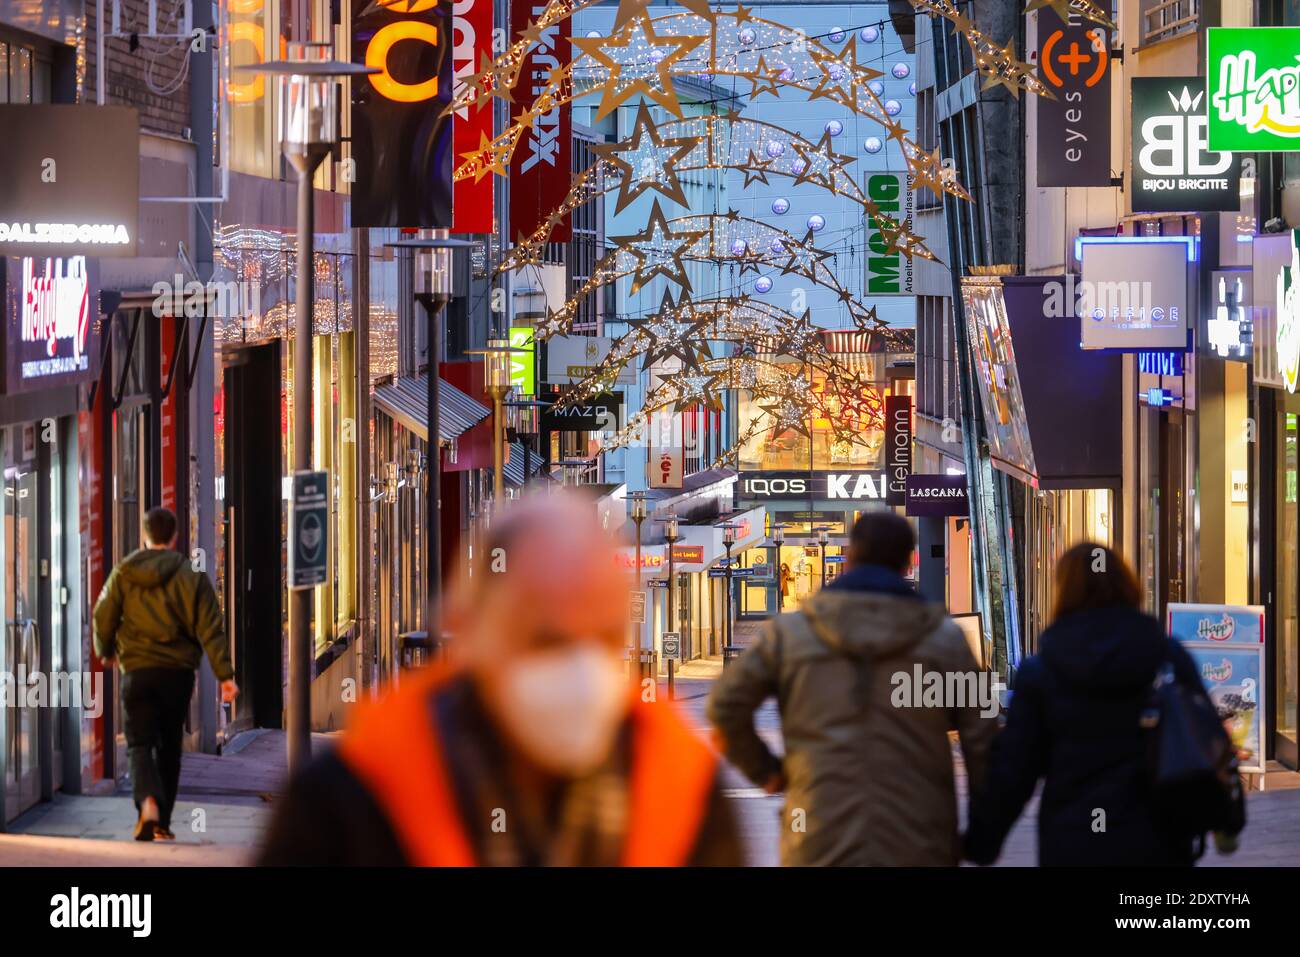 Essen, région de la Ruhr, Rhénanie-du-Nord-Westphalie, Allemagne - centre-ville d'Essen en temps de crise de corona au deuxième confinement le jour avant la veille de Noël Banque D'Images